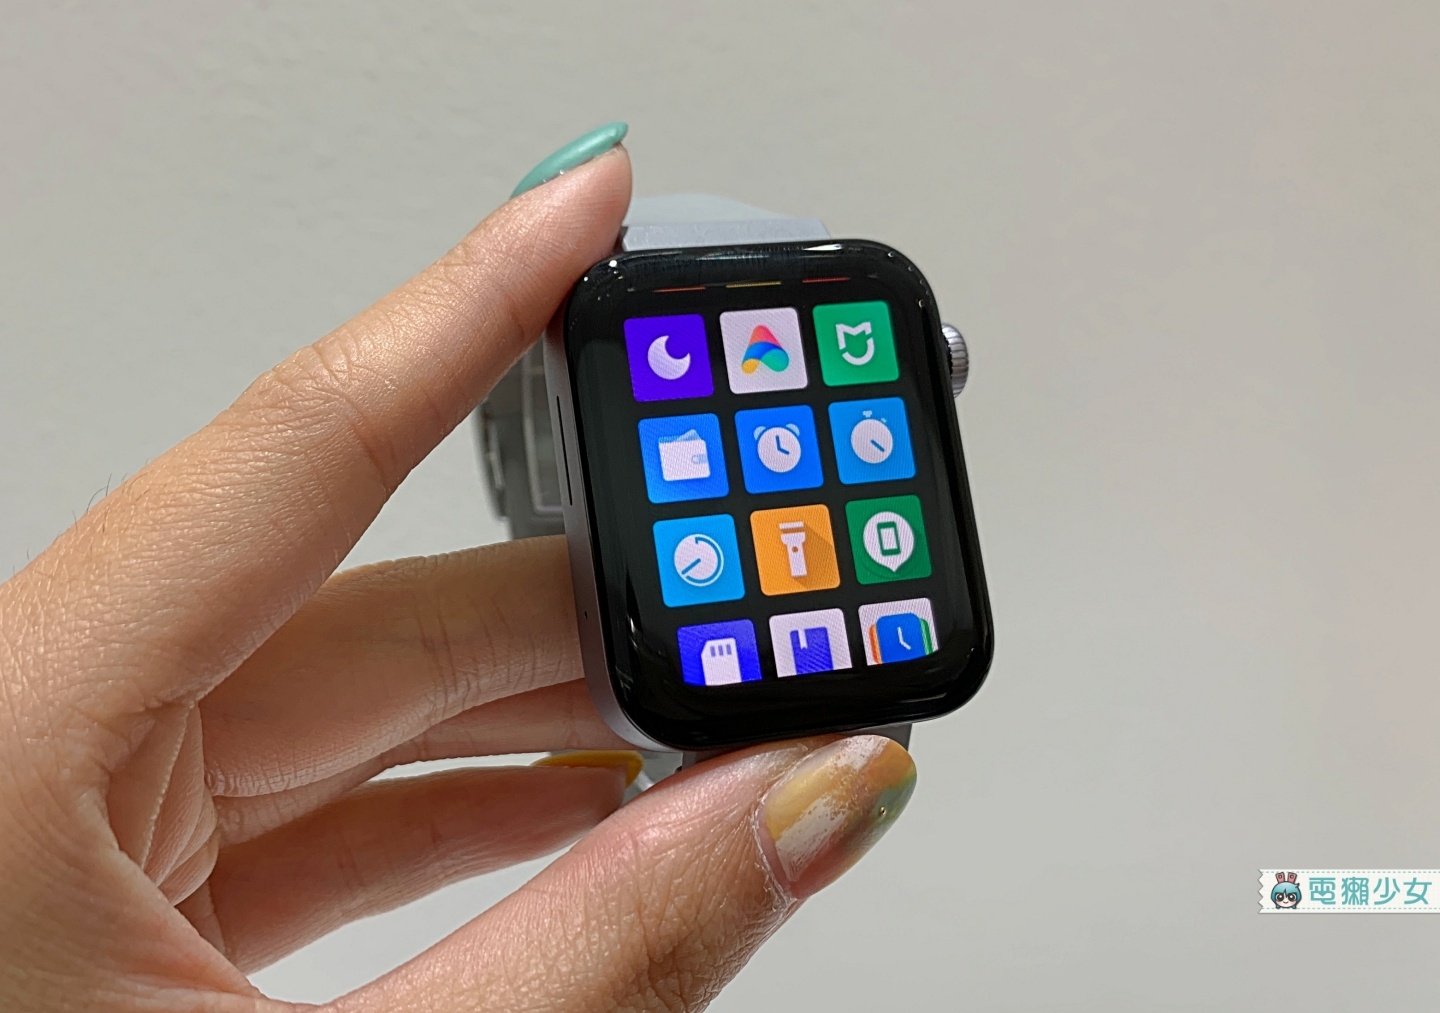 出遠門｜小米 CC9 Pro 一億畫素手機正式發表！可獨立通話的小米手錶和超美型小米電視 5 系列一併亮相